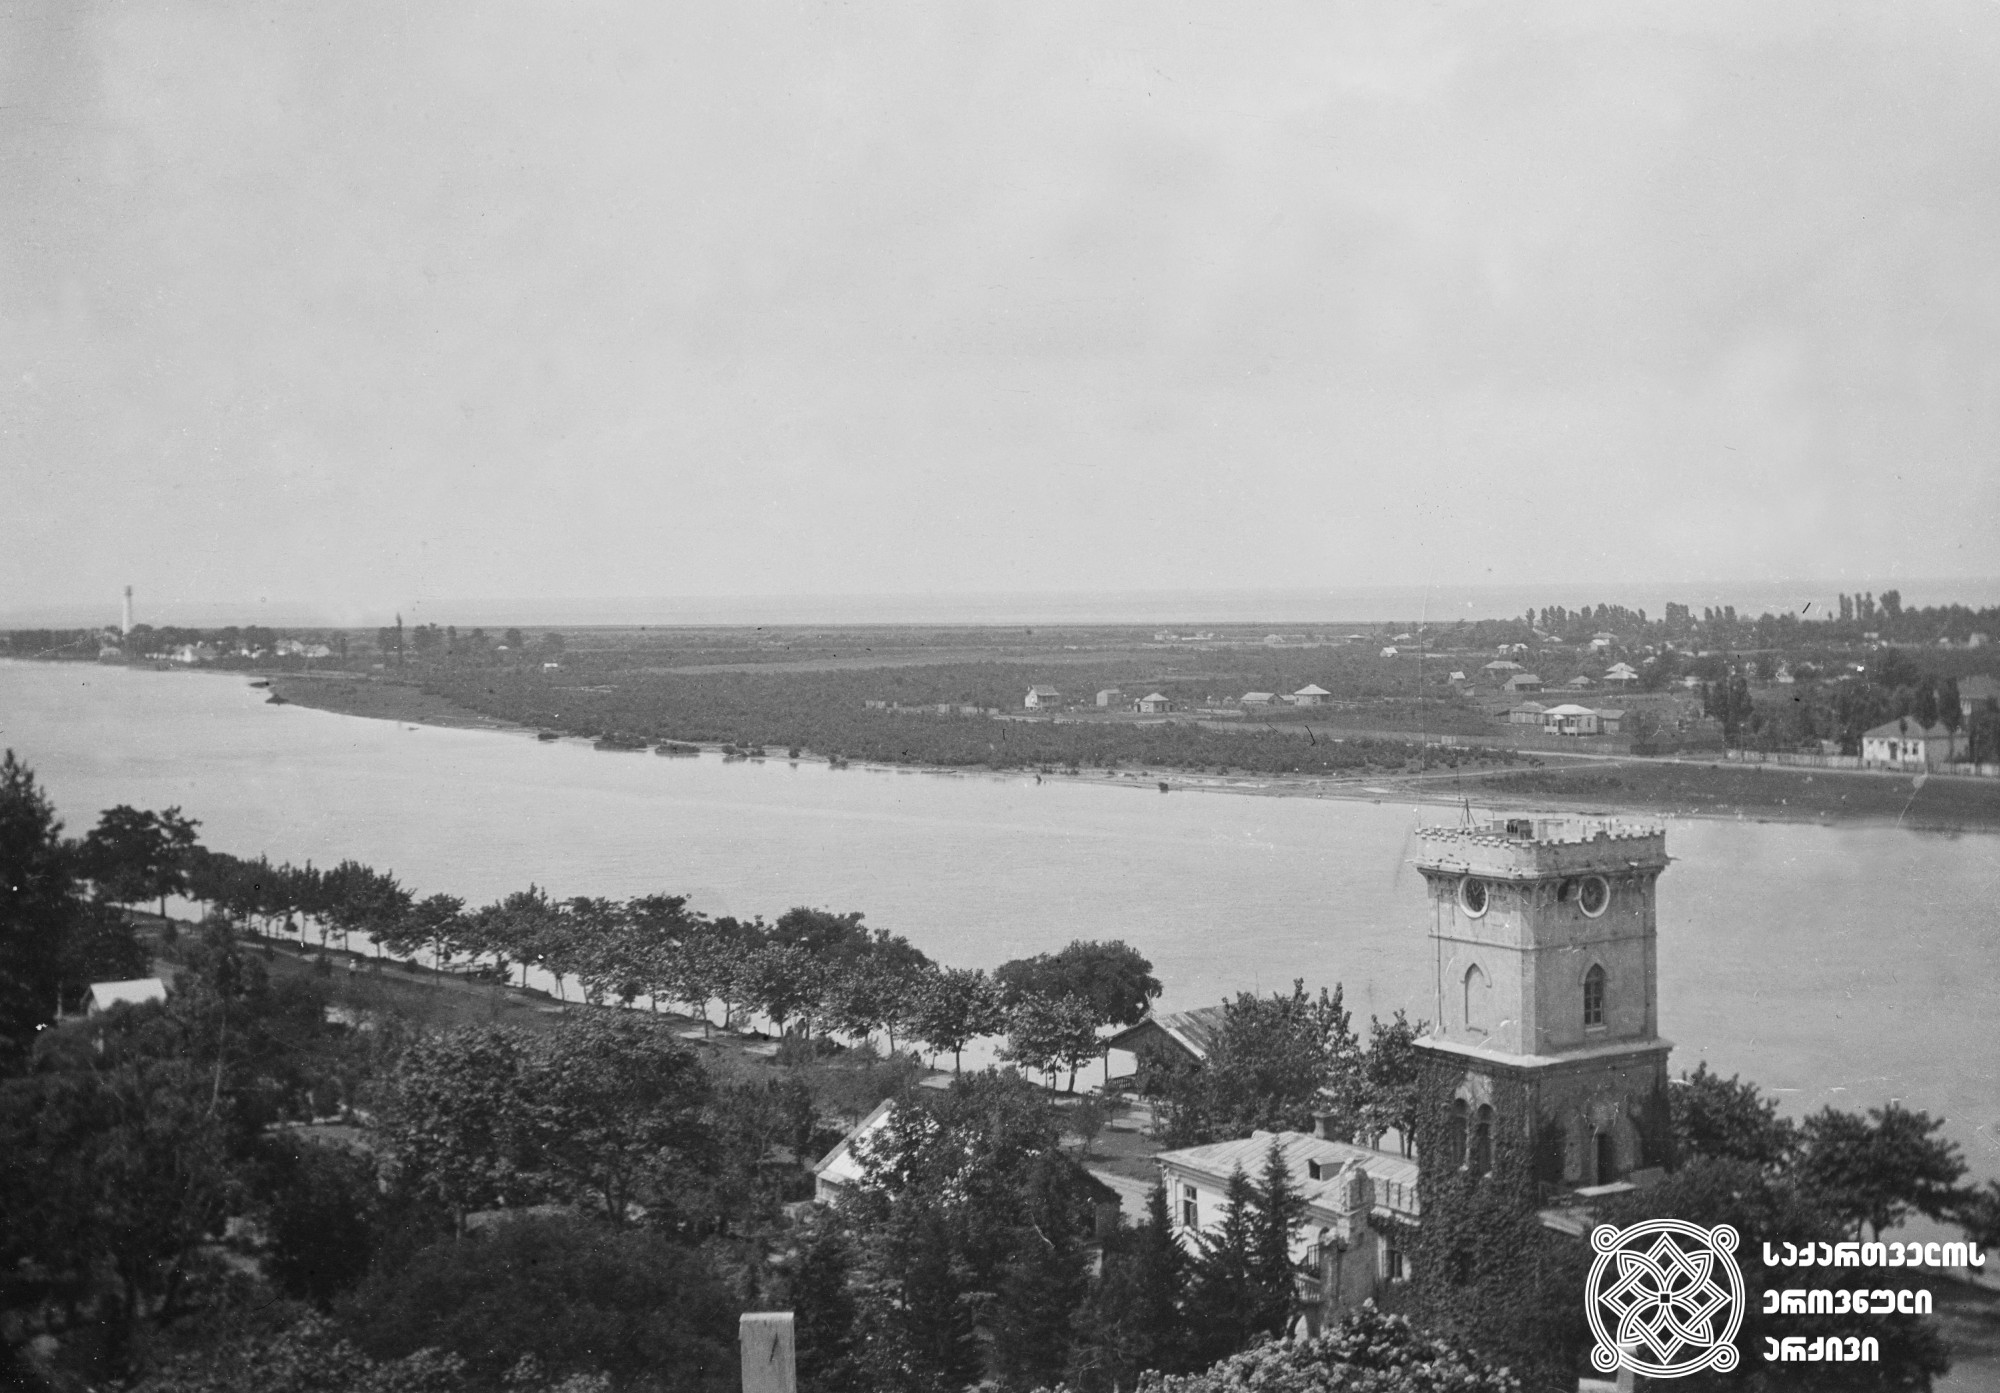 ნიკო ნიკოლაძის კოშკი და მდინარე რიონის ხედი. <br>
ფოტო გადაღებულიa საკათედრო ტაძრის გუმბათიდან. <br>
1907 წელი. <br>
ნიკოლაძე-ღამბაშიძის ფოტოკოლექცია.